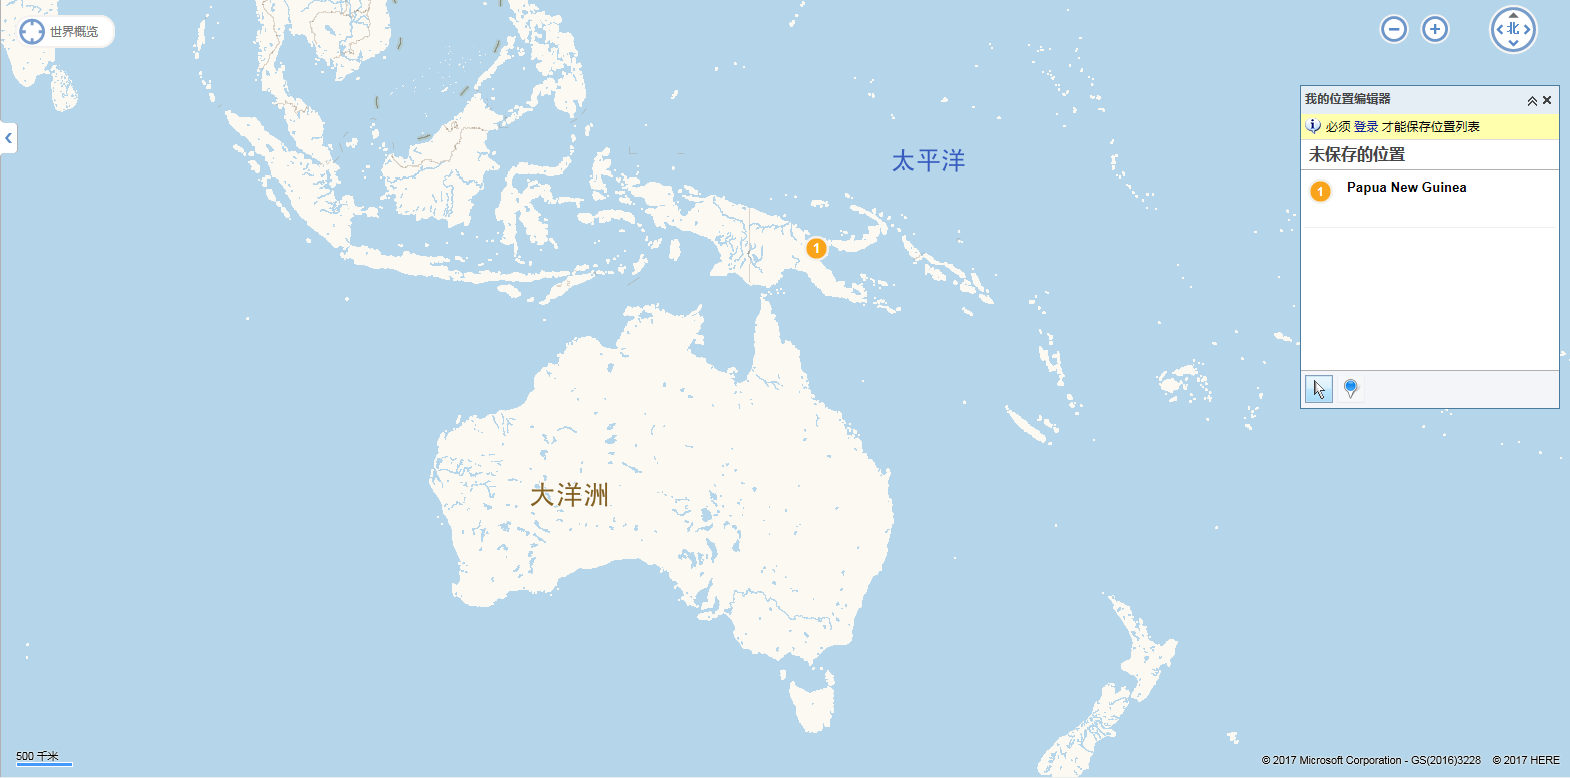 巴布亚新几内亚的位置